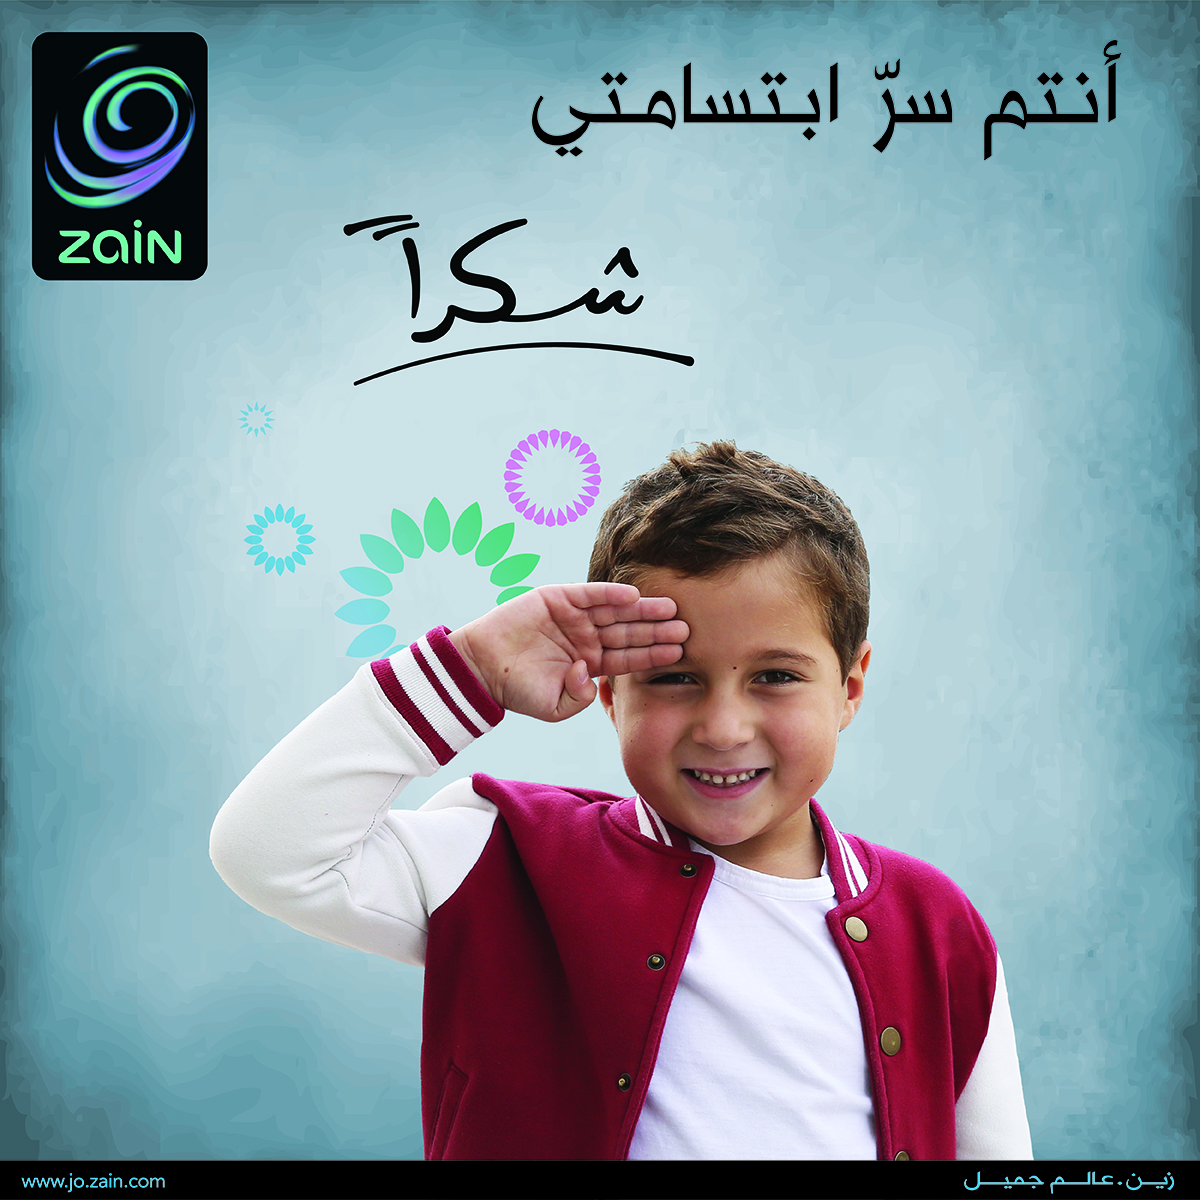 "زين" تطلق حملة "شكراً" للاجهزة الامنية والجيش العربي  ..  فيديو 